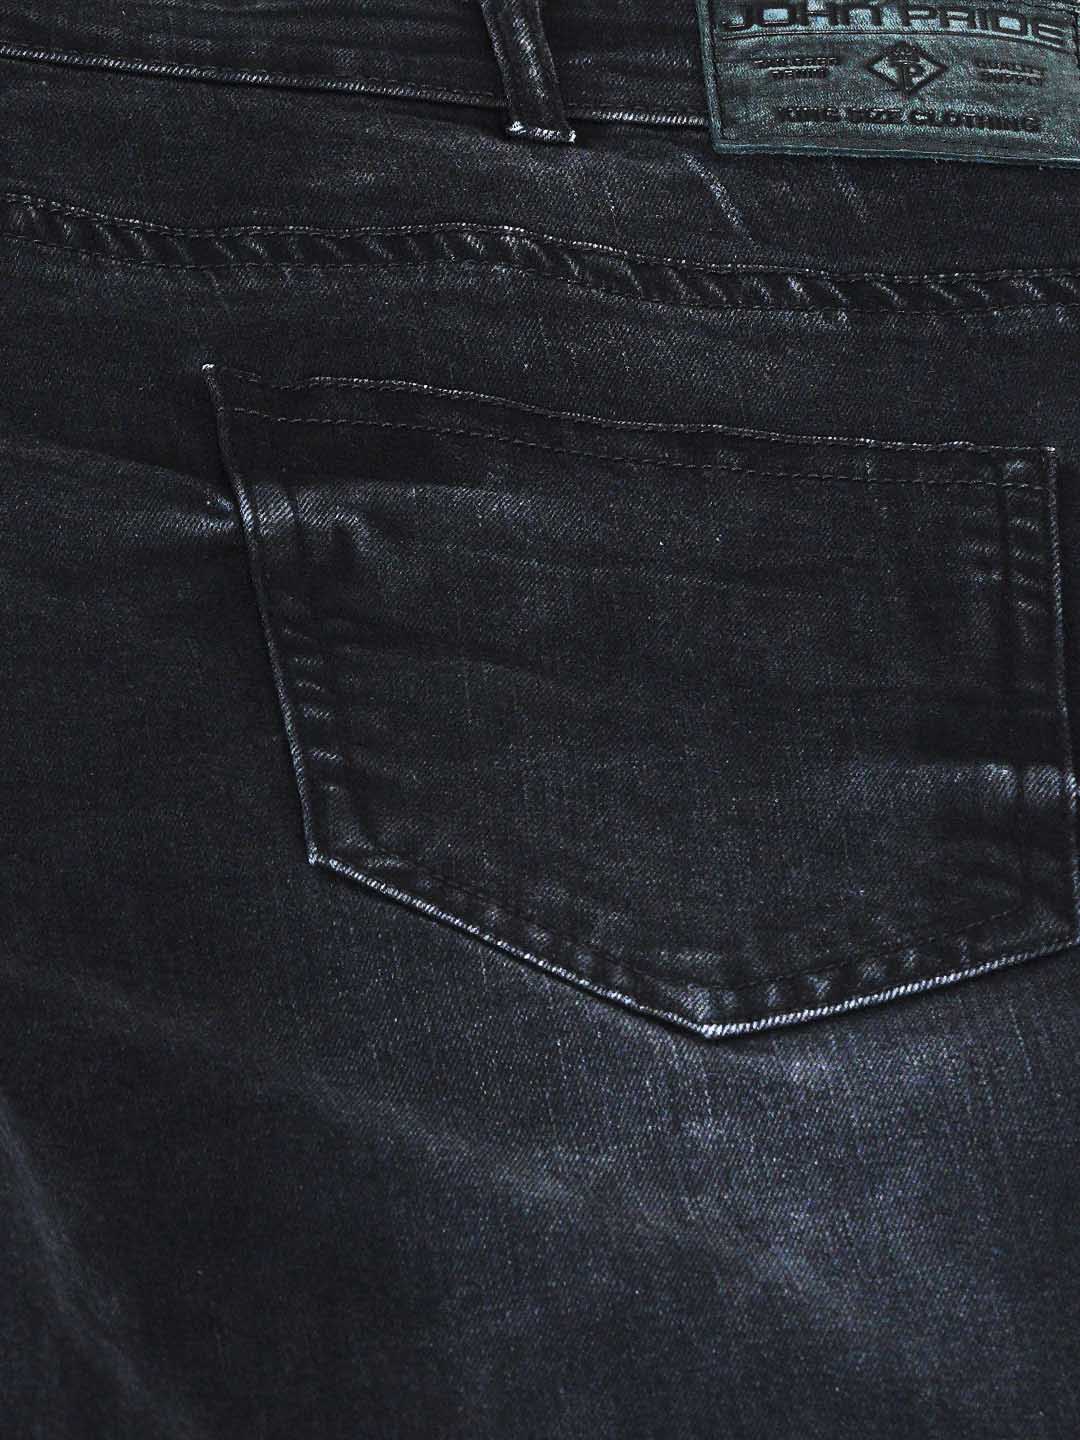 bottomwear/jeans/JPJ12136/jpj12136-6.jpg